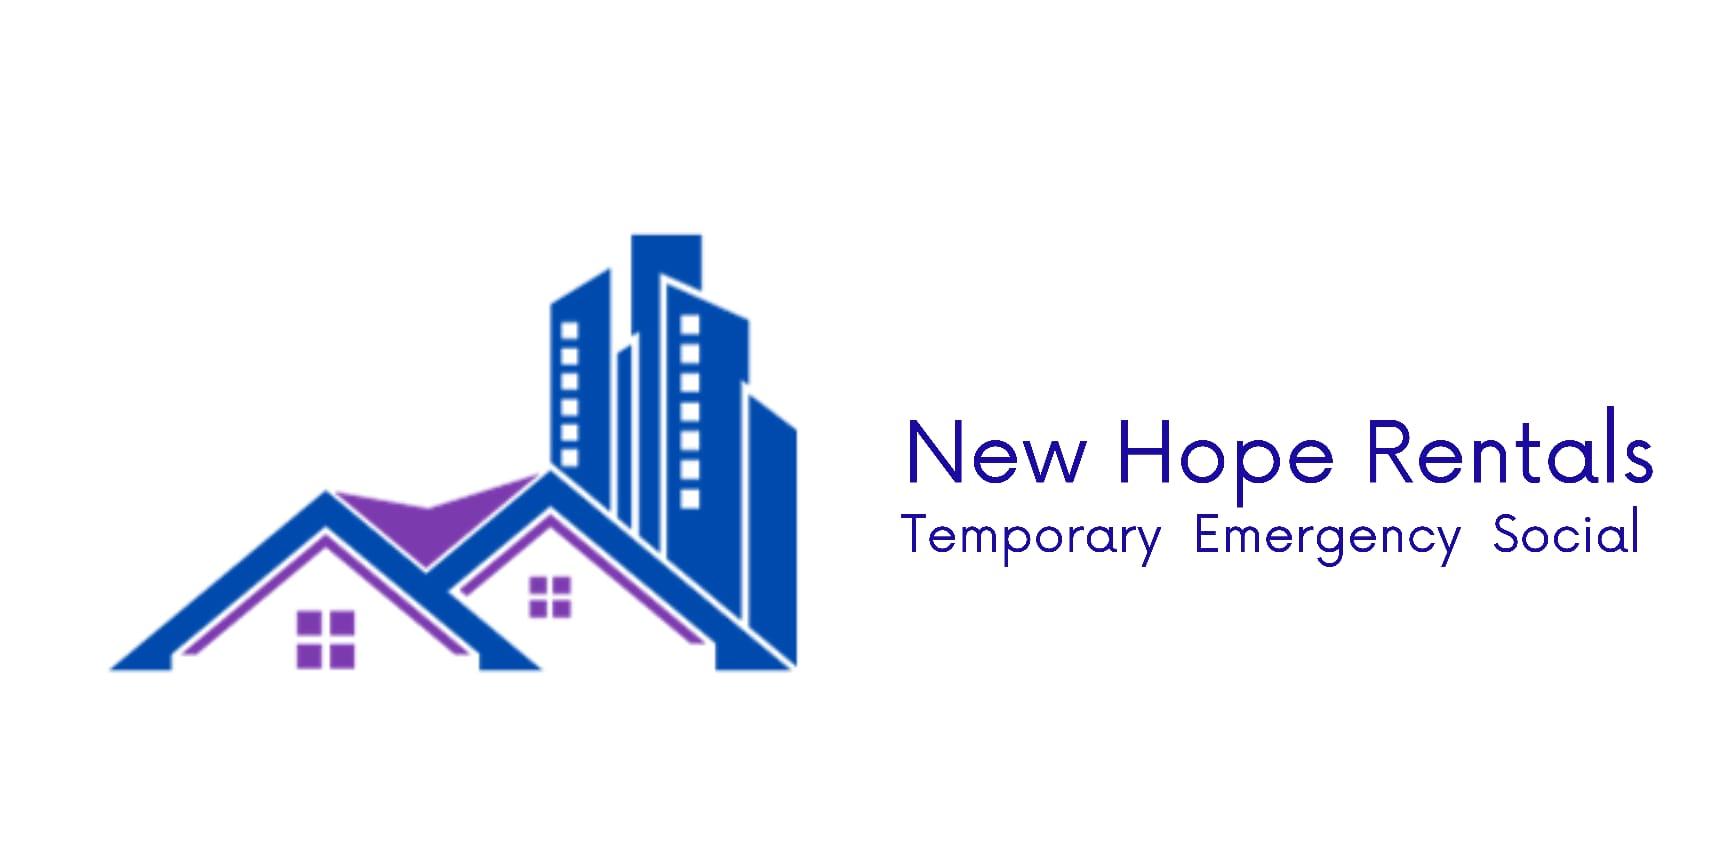 New Hope Rentals